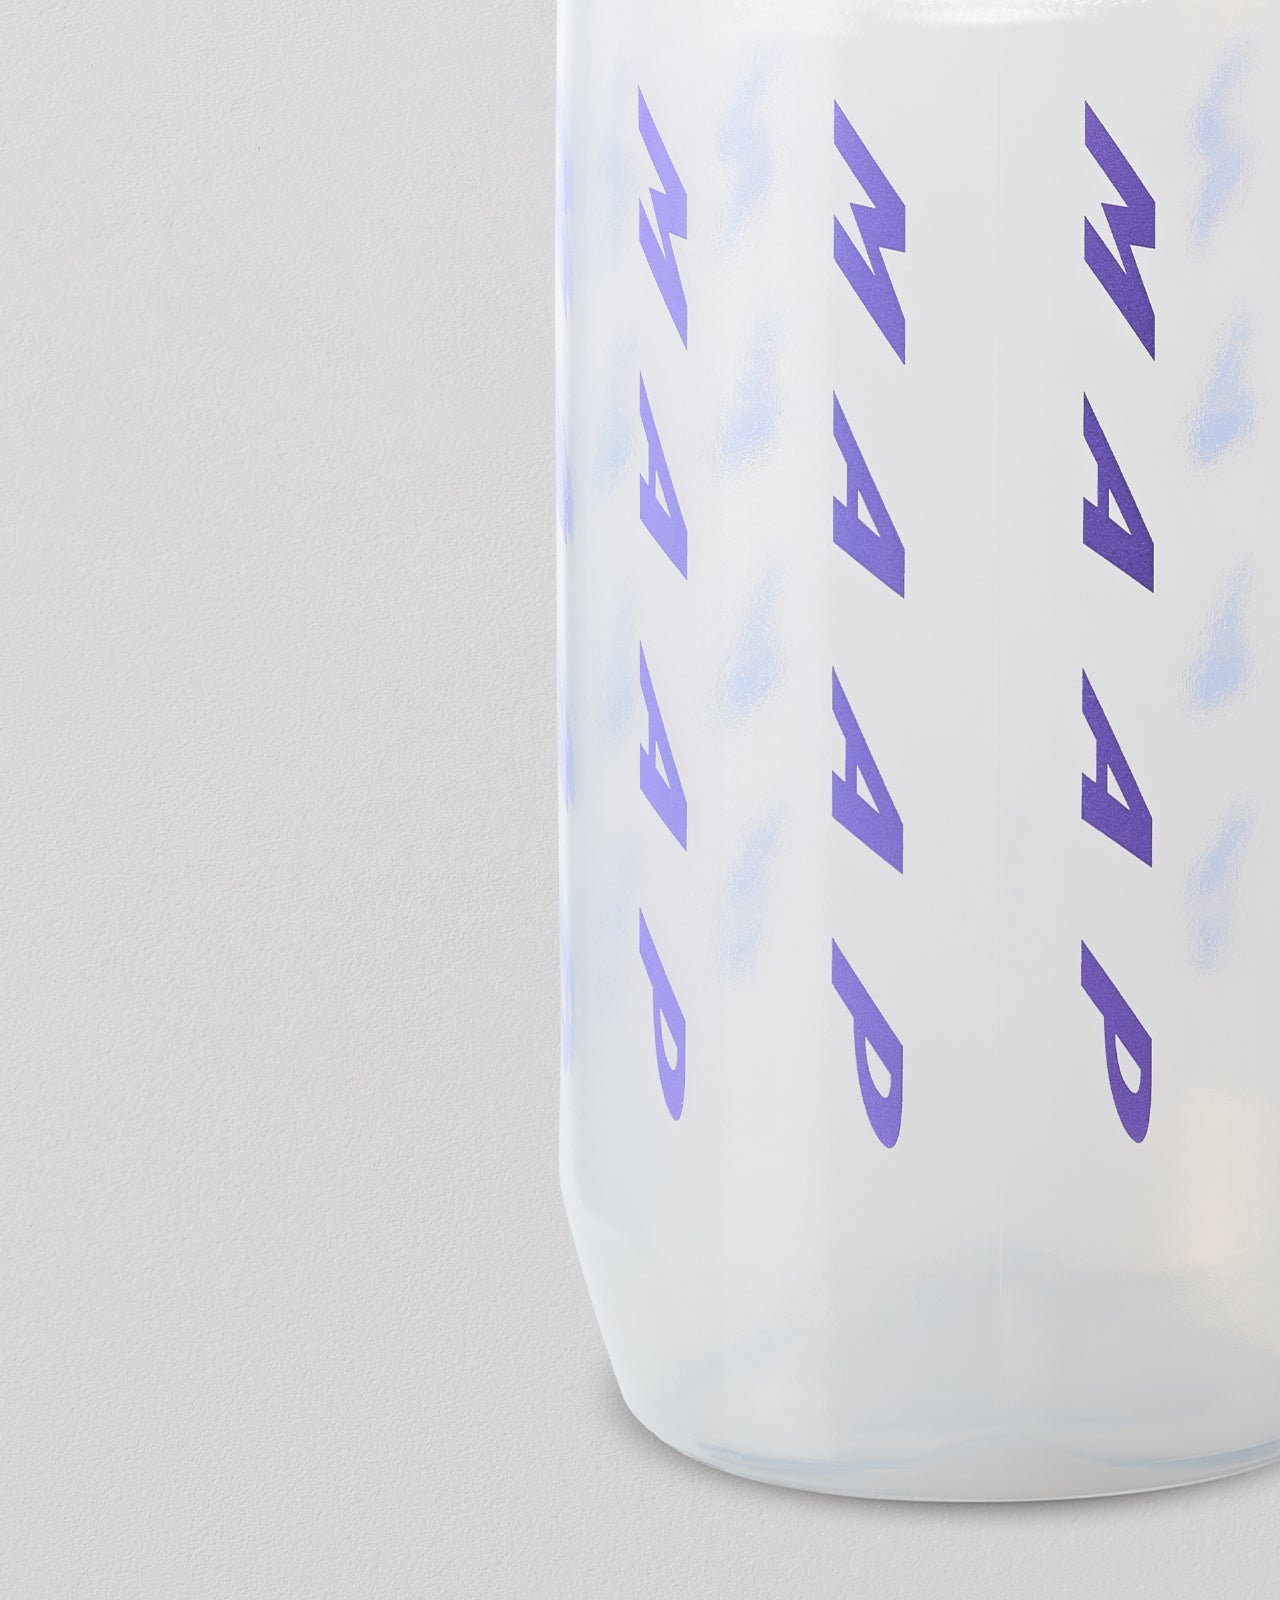 MAAP Evade Bottle - Ultraviolet/Clear